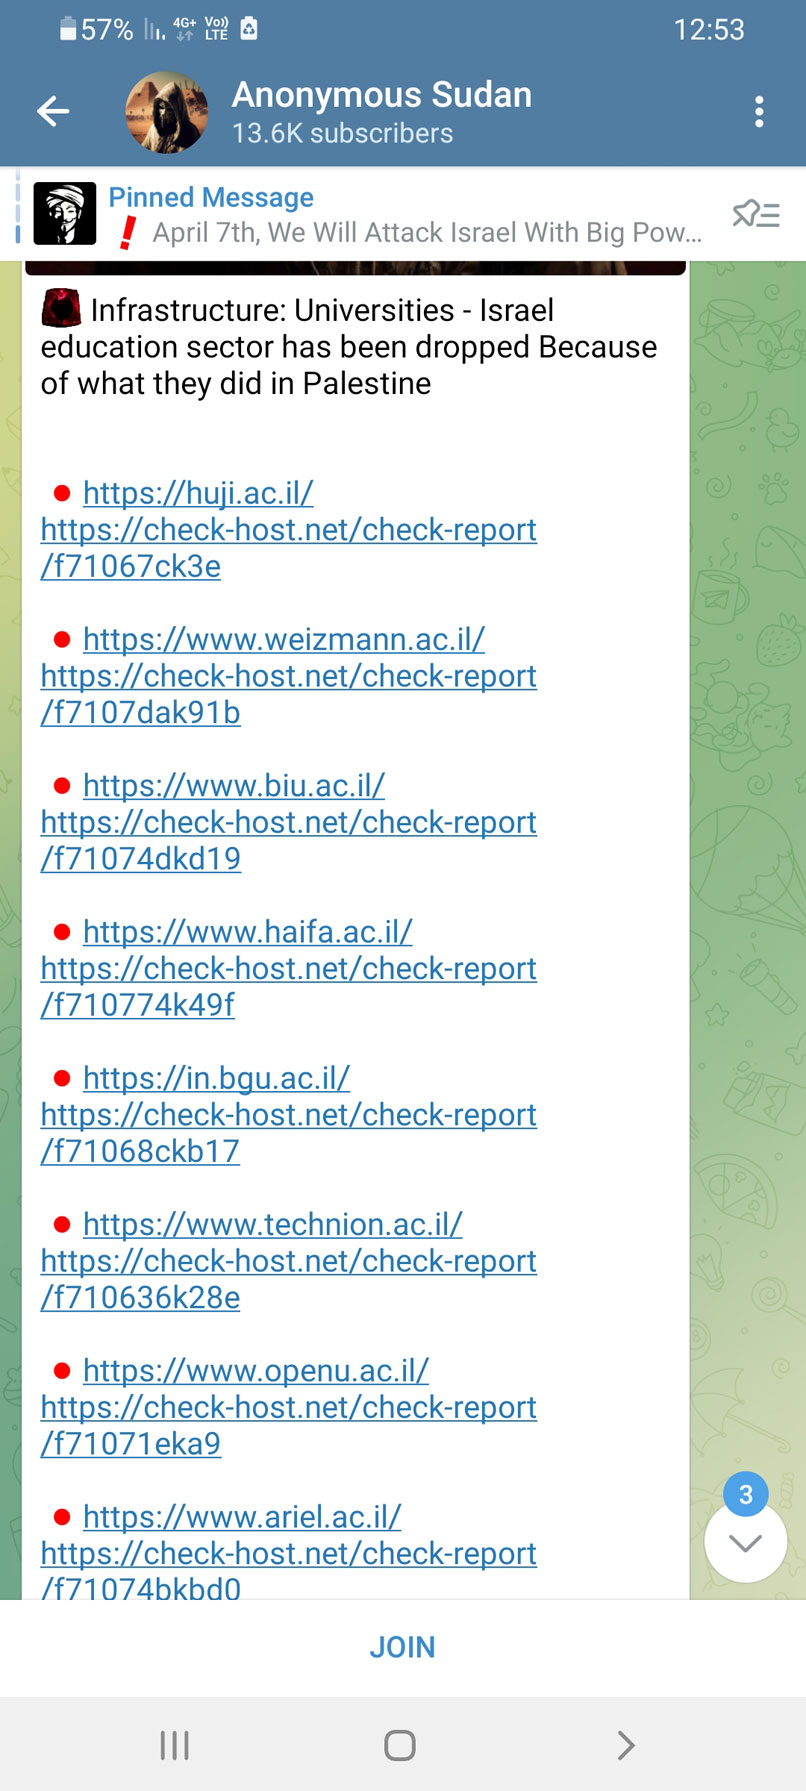 רשימת רוב האתרים שחברי הקבוצה תקפו, לדבריהם.